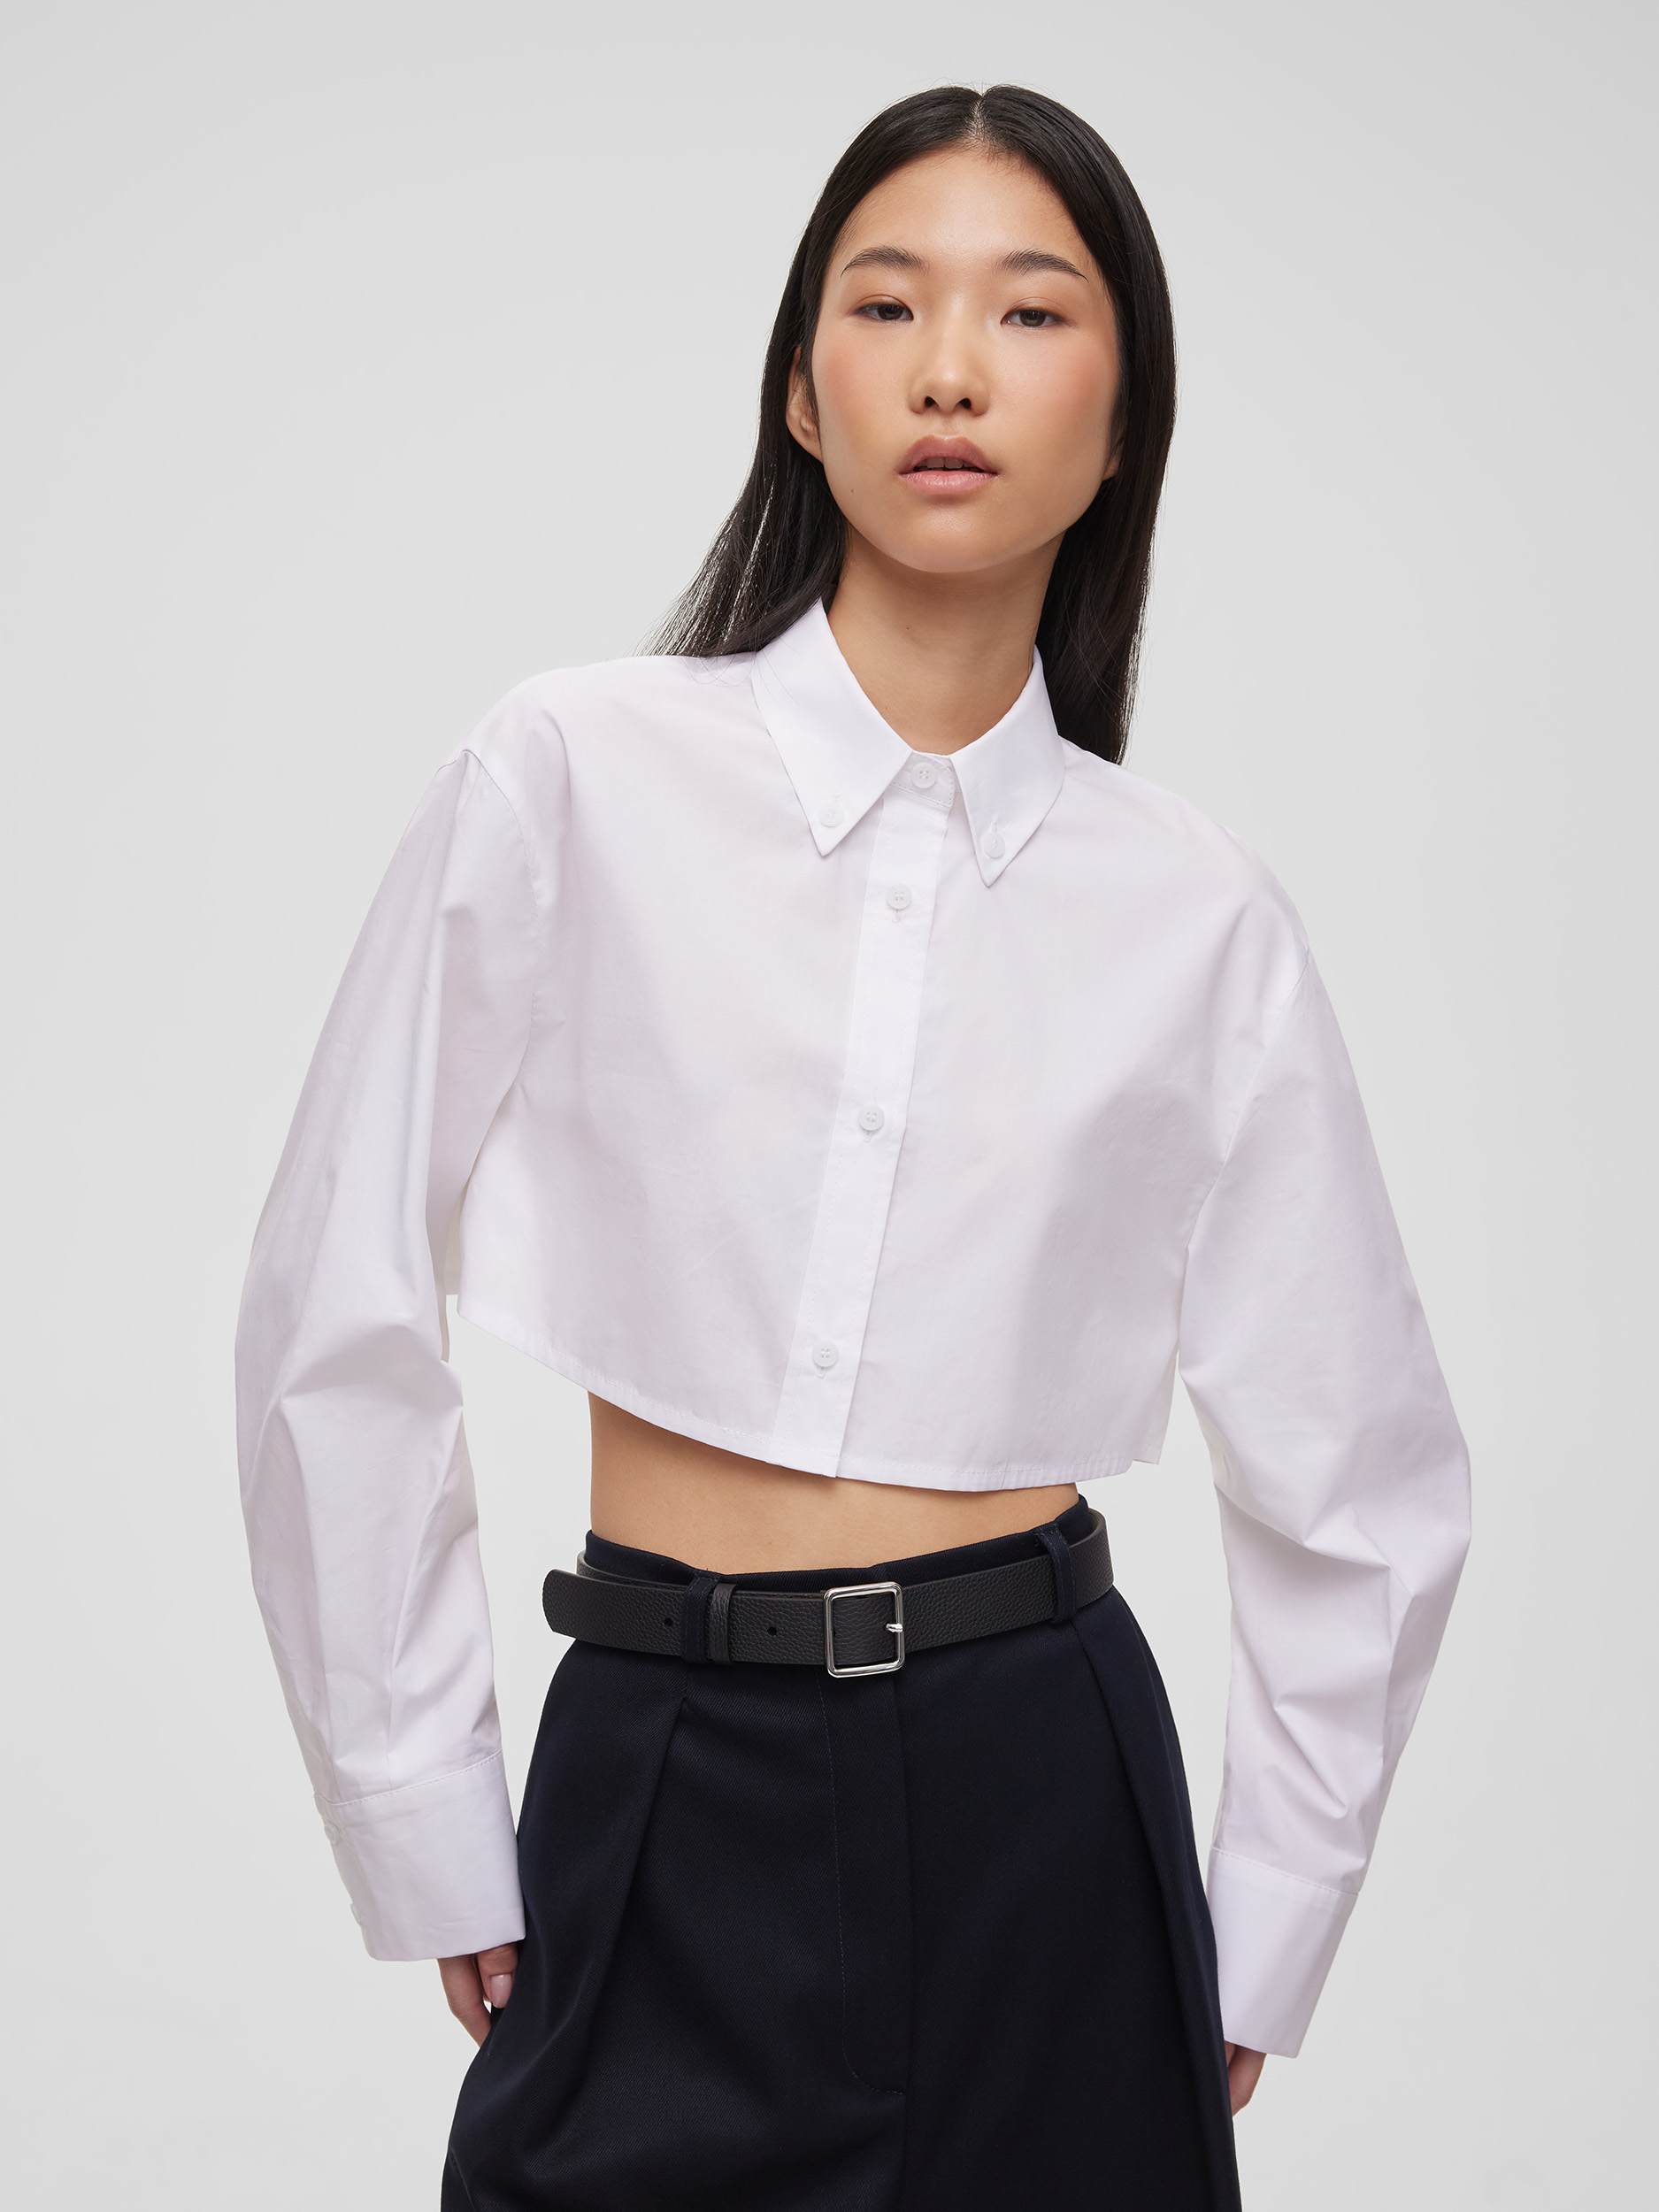 Рубашка женская короткая из хлопка, цвет – белый рубашка женская короткая из хлопка цвет – серый